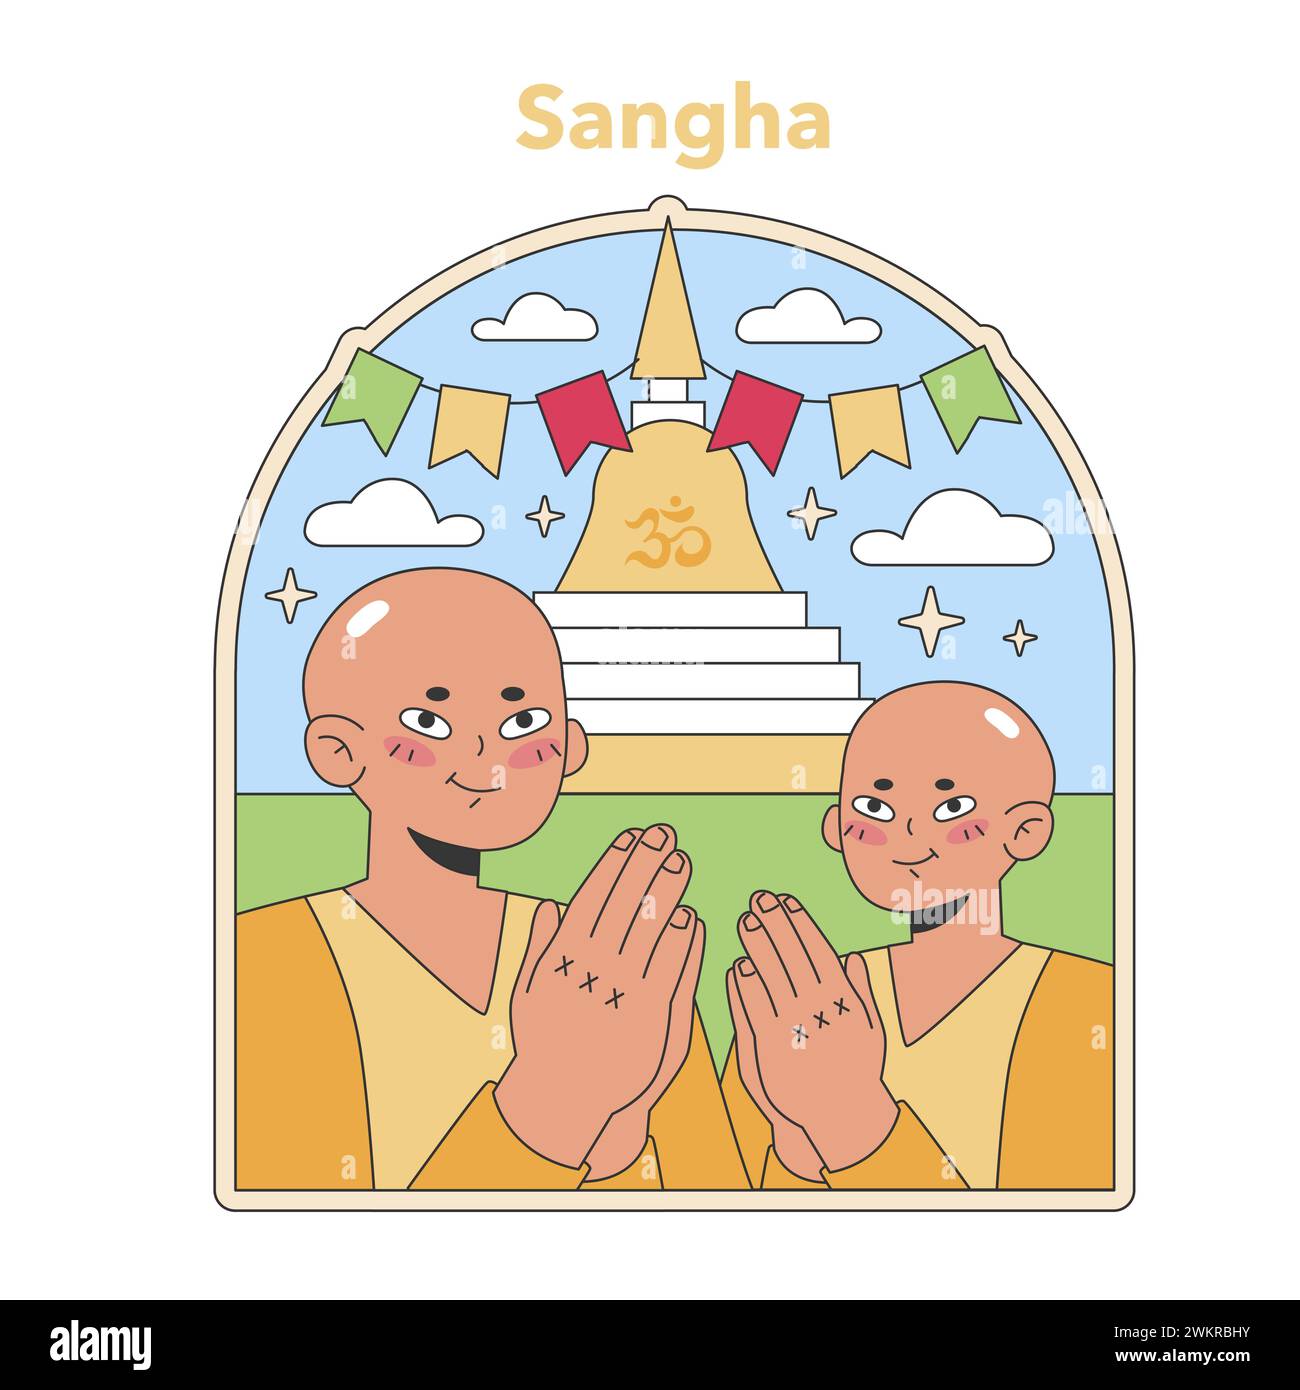 Sangha Community Illustration. Mönche im Gebet, vereint im Glauben und in der Tradition, unter der heiligen Stupa. Illustration des flachen Vektors Stock Vektor